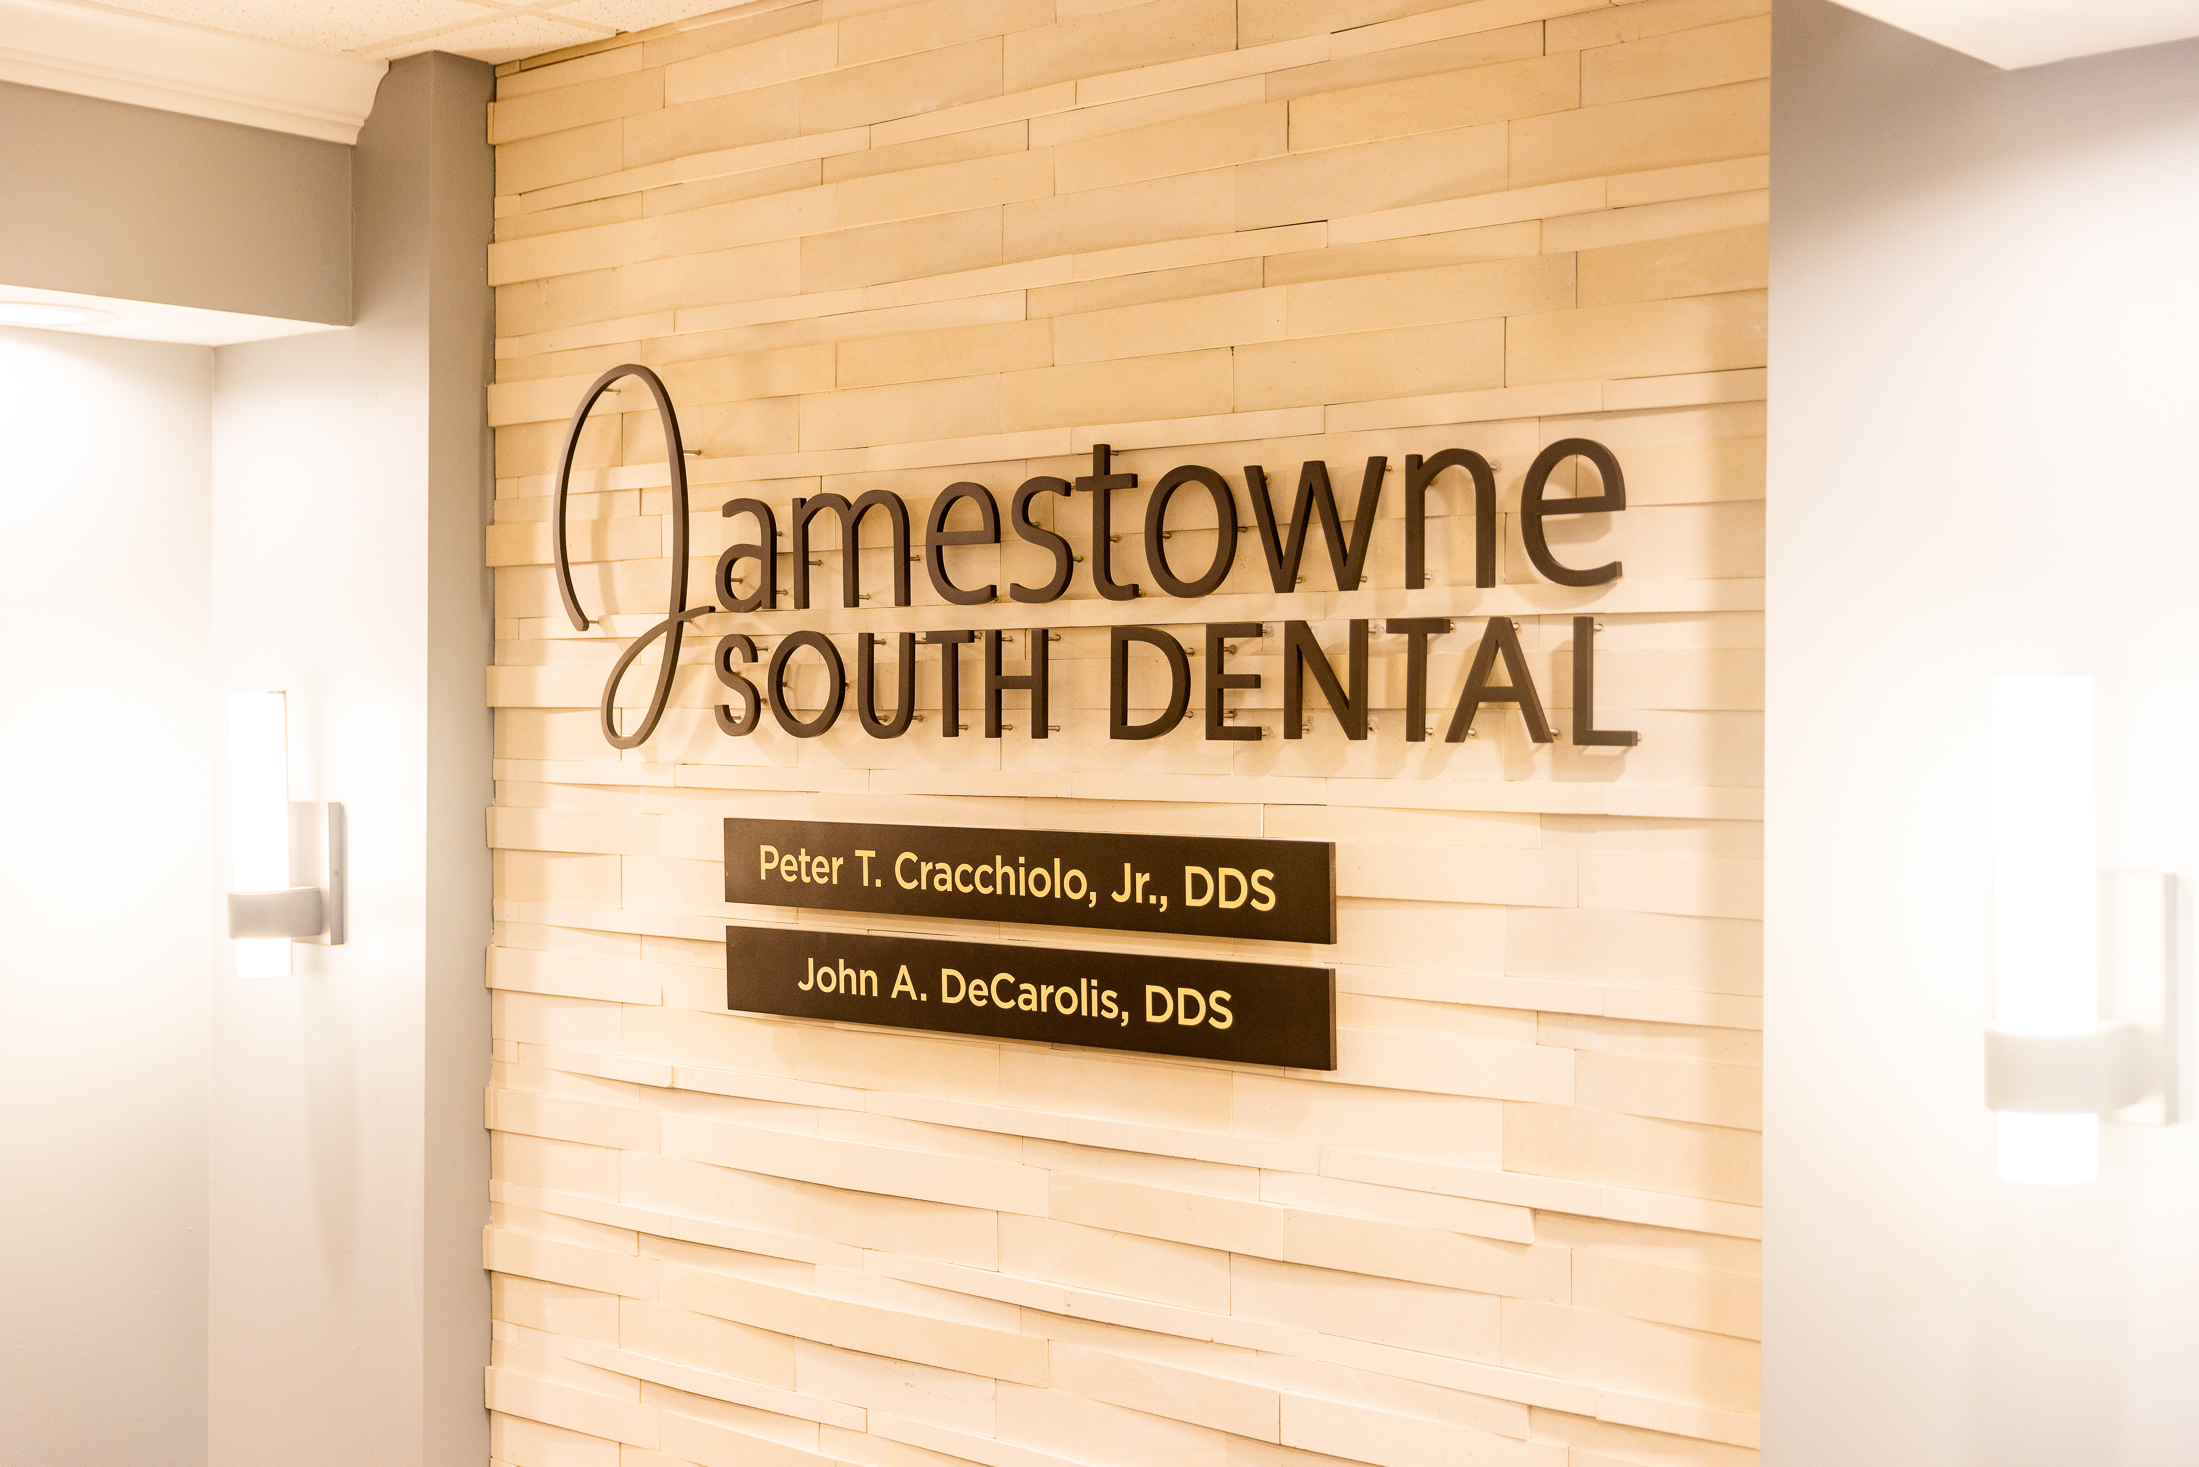 Jamestowne South Dental advanced family dentistry